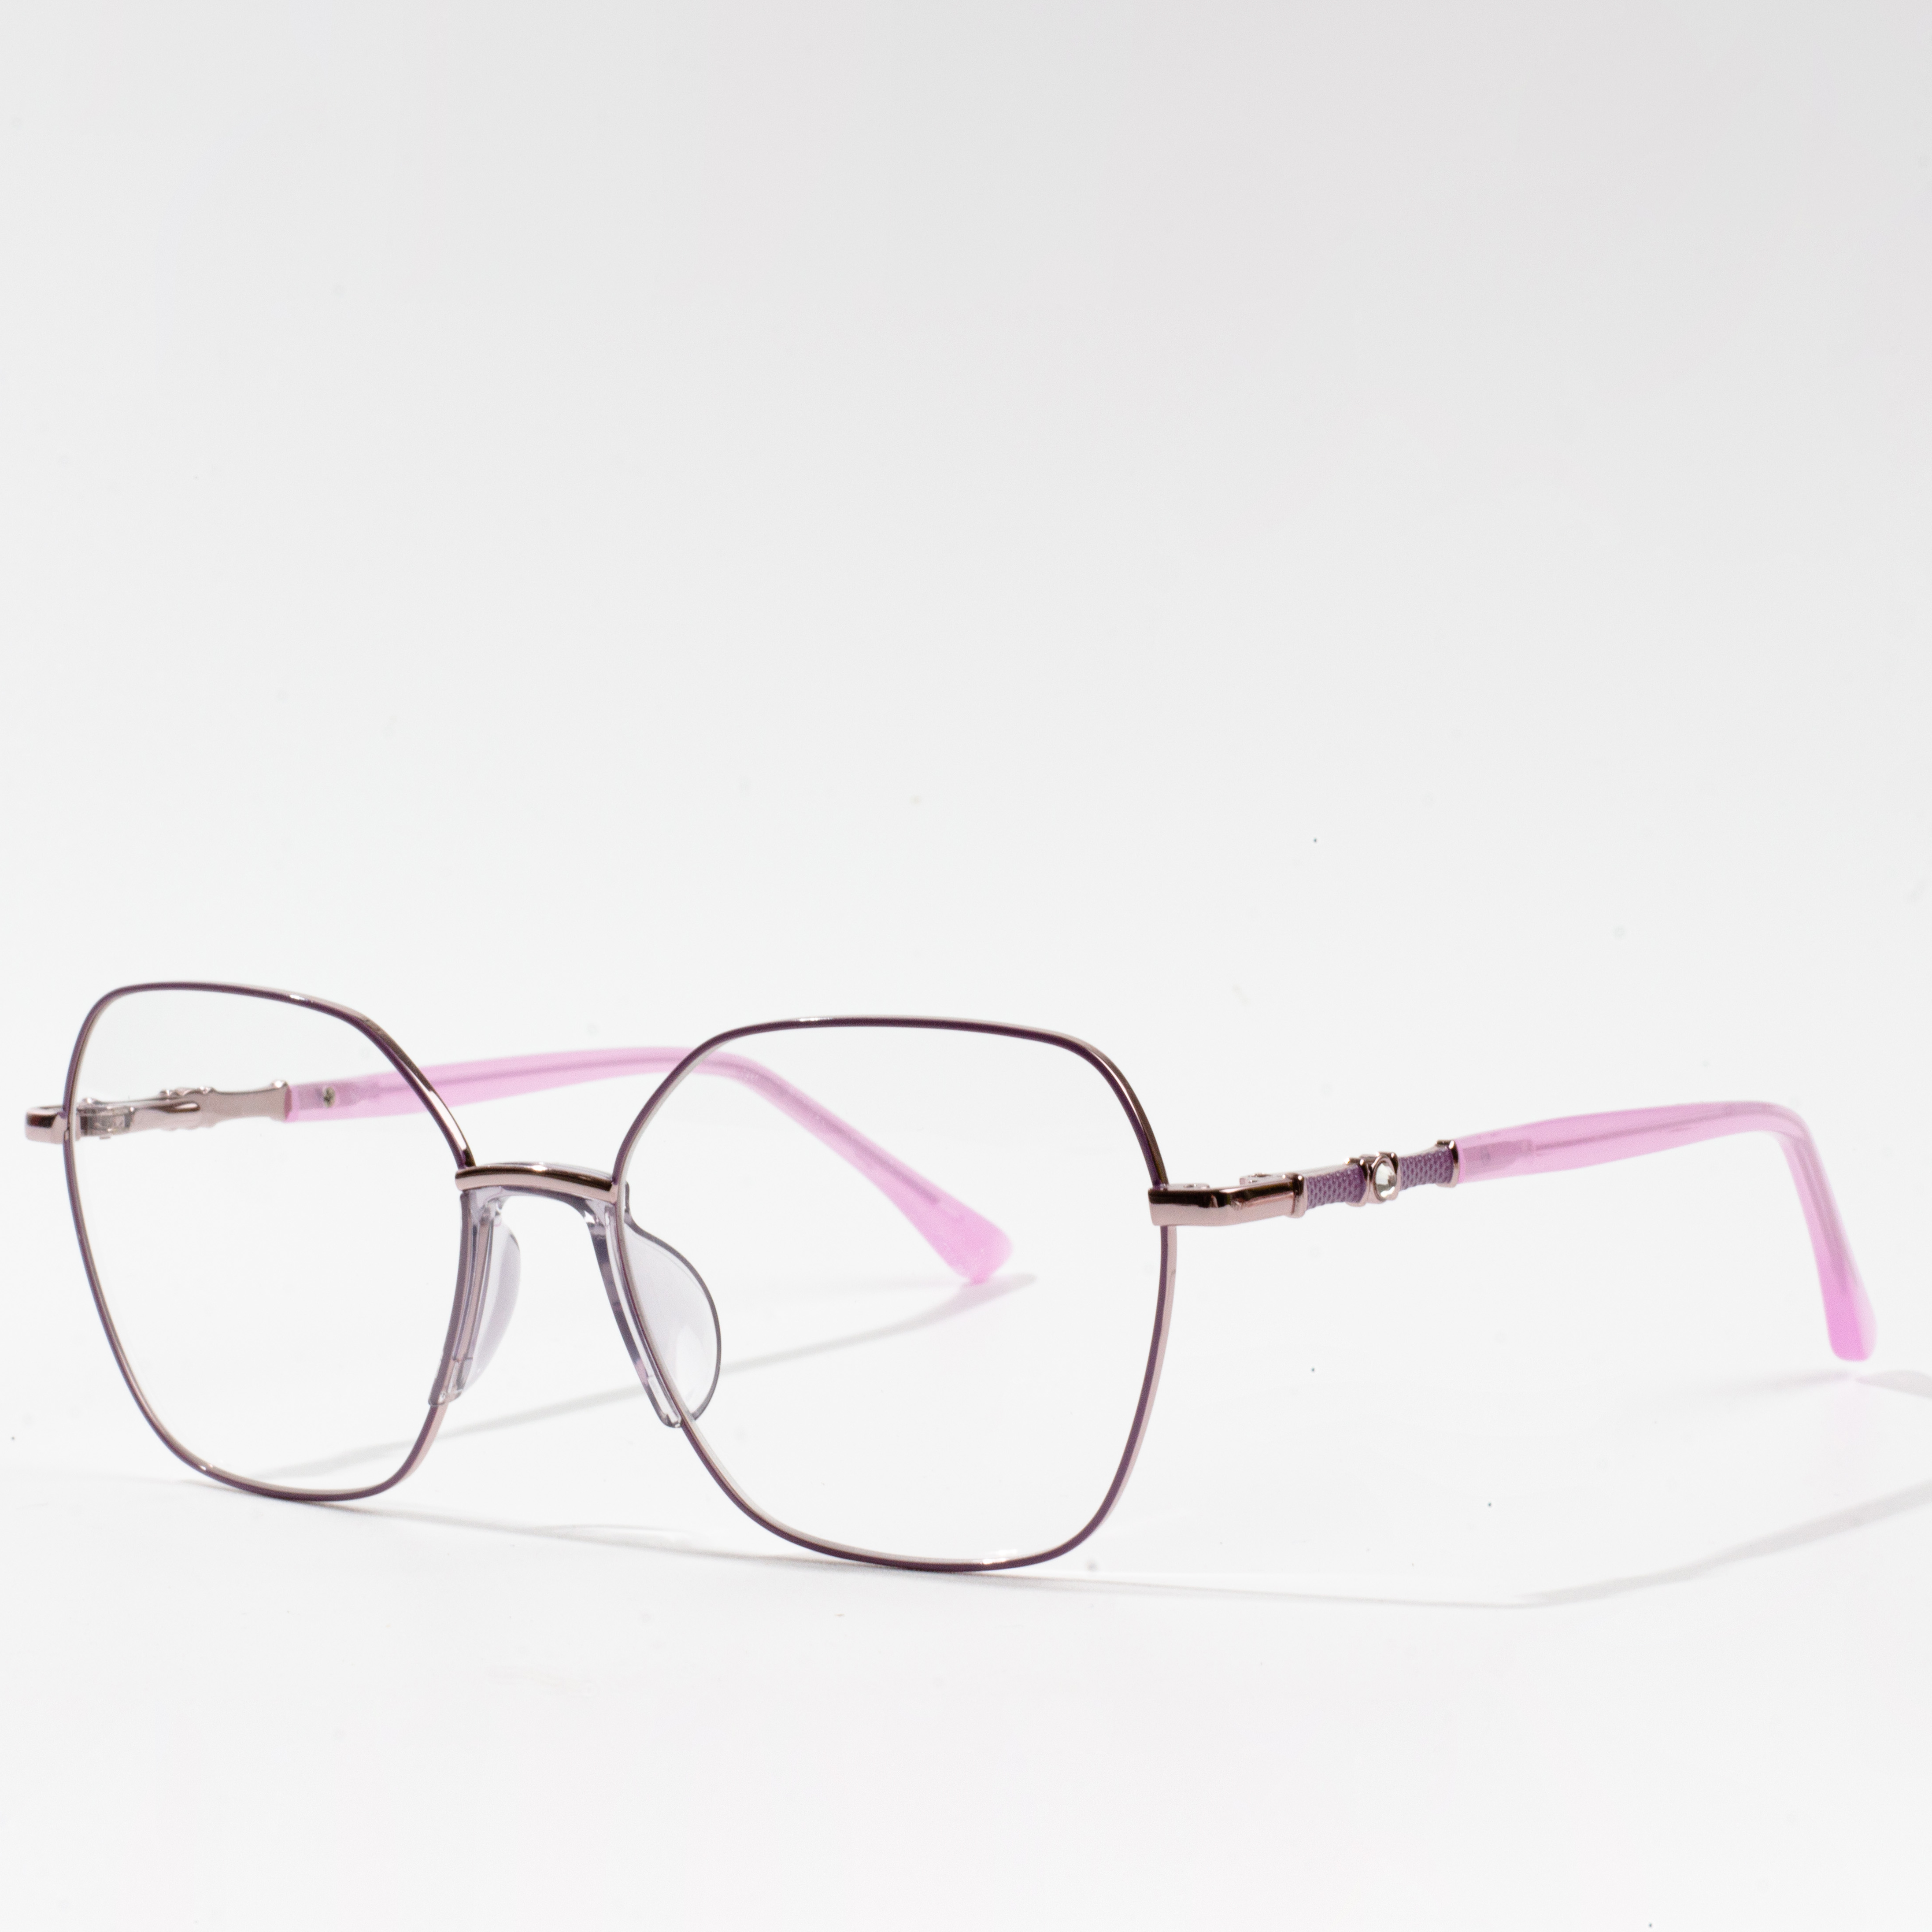 marques de montures de lunettes